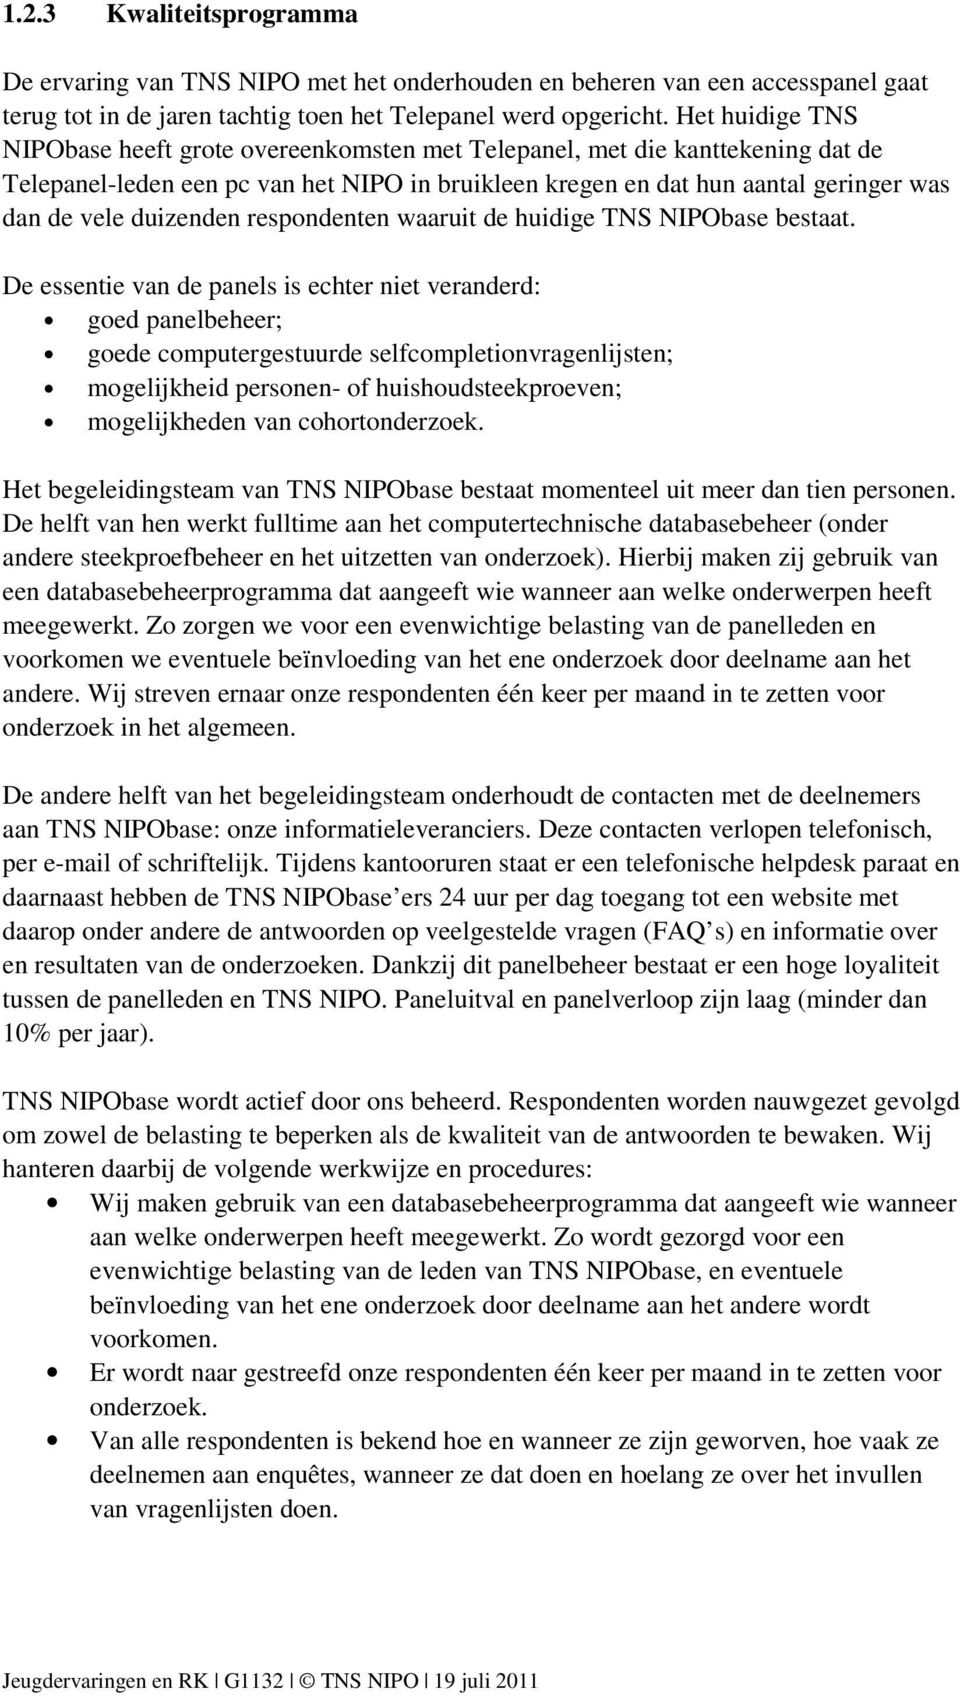 duizenden respondenten waaruit de huidige TNS NIPObase bestaat.